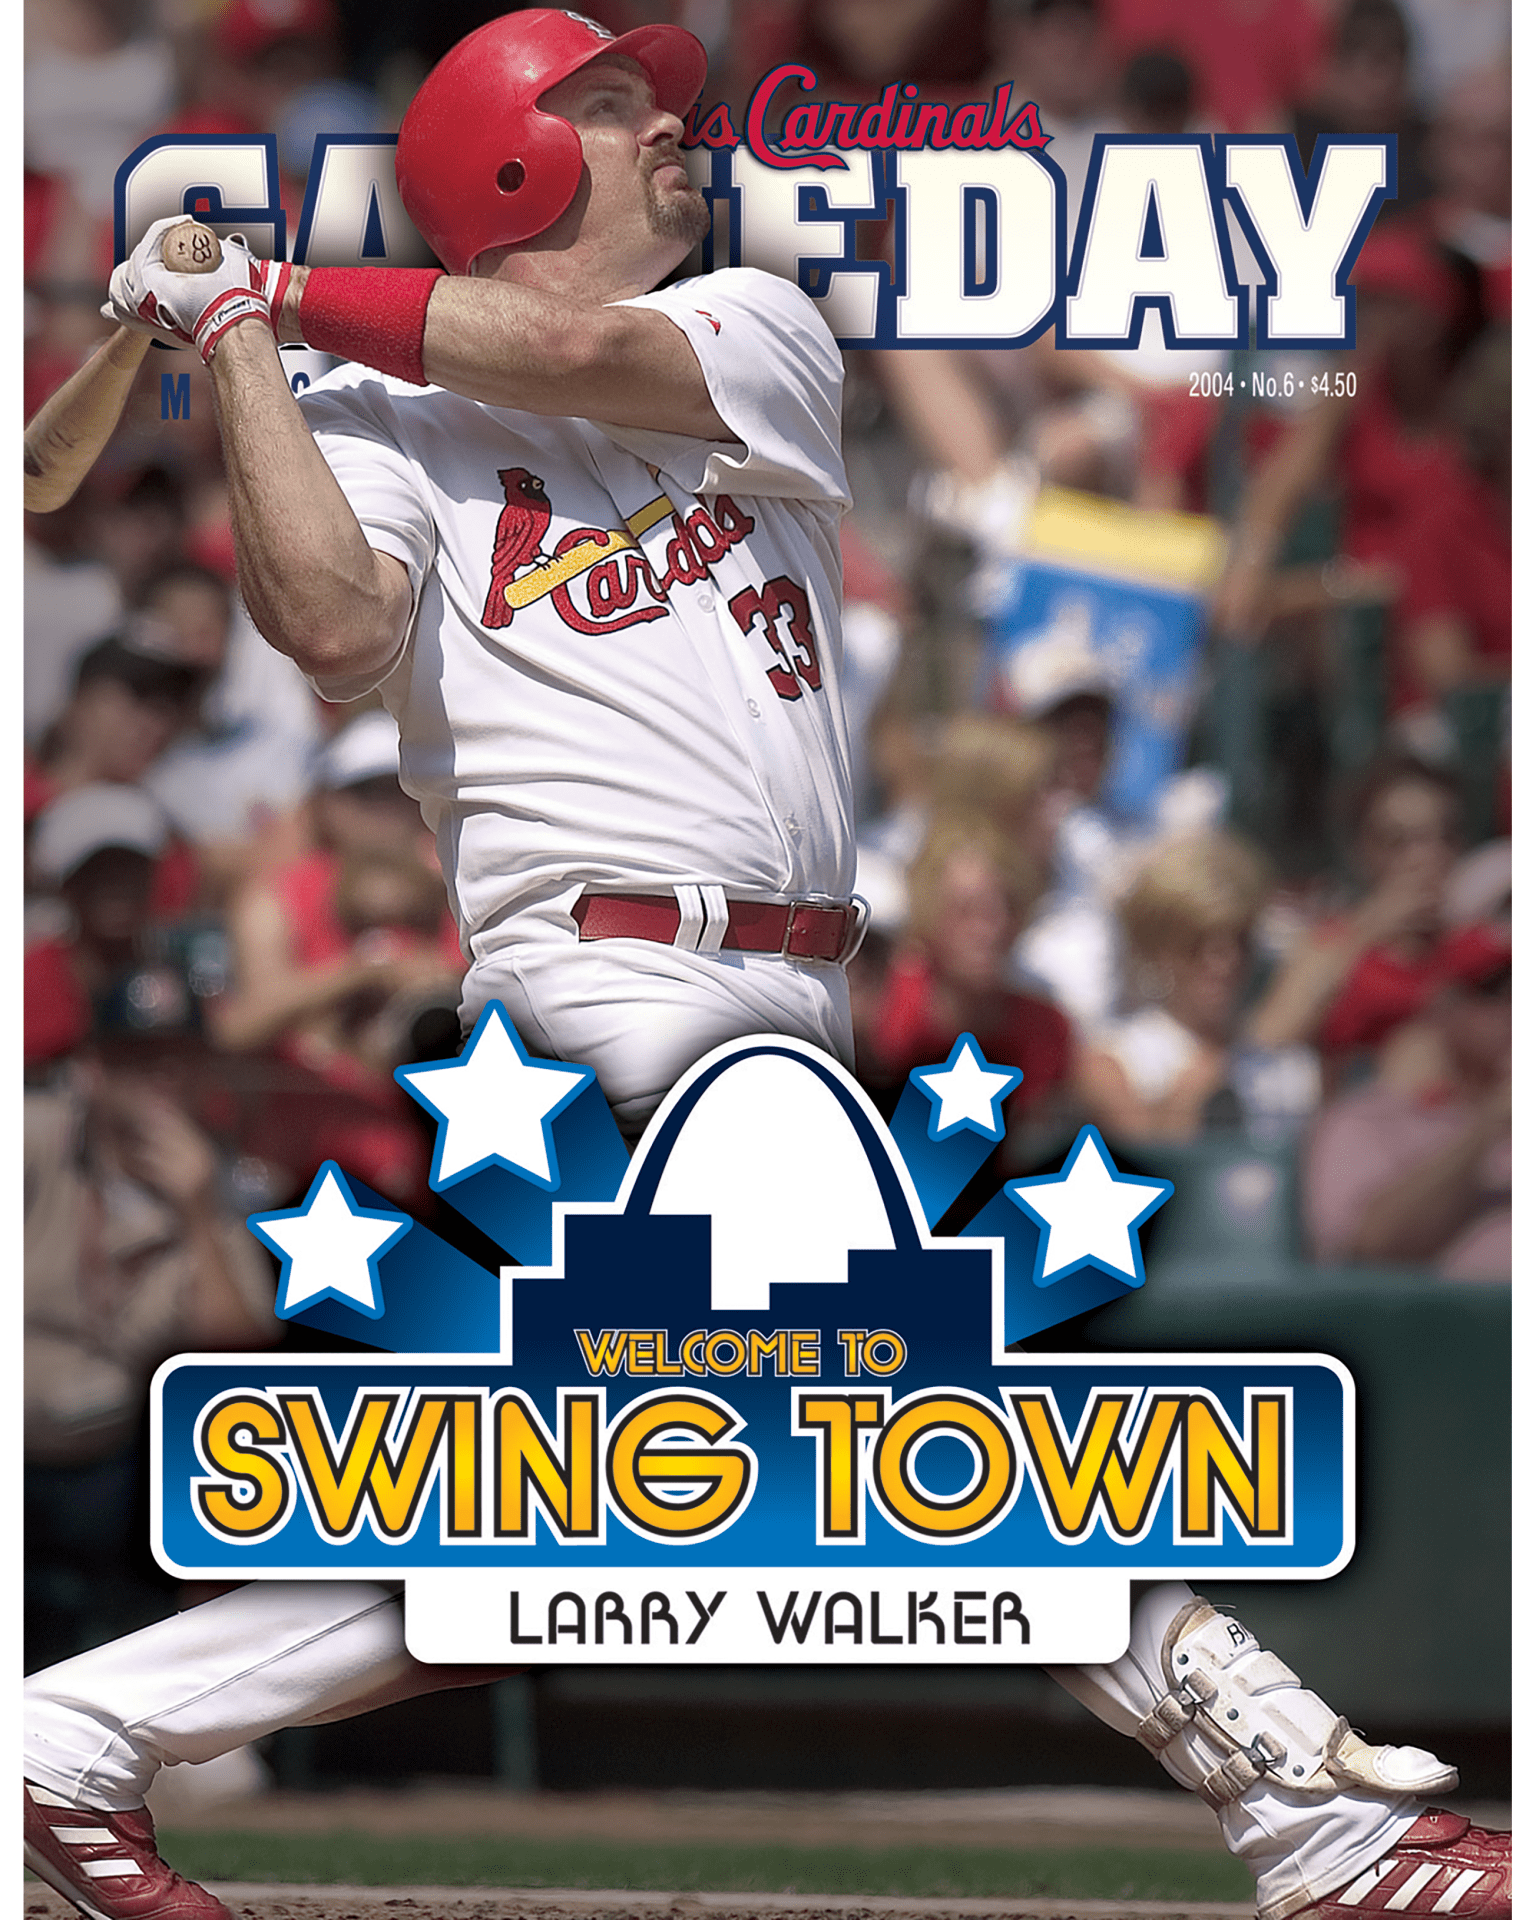  2006 Topps # 165 Larry Walker St. Louis Cardinals (Baseball Card)  NM/MT Cardinals : Collectibles & Fine Art